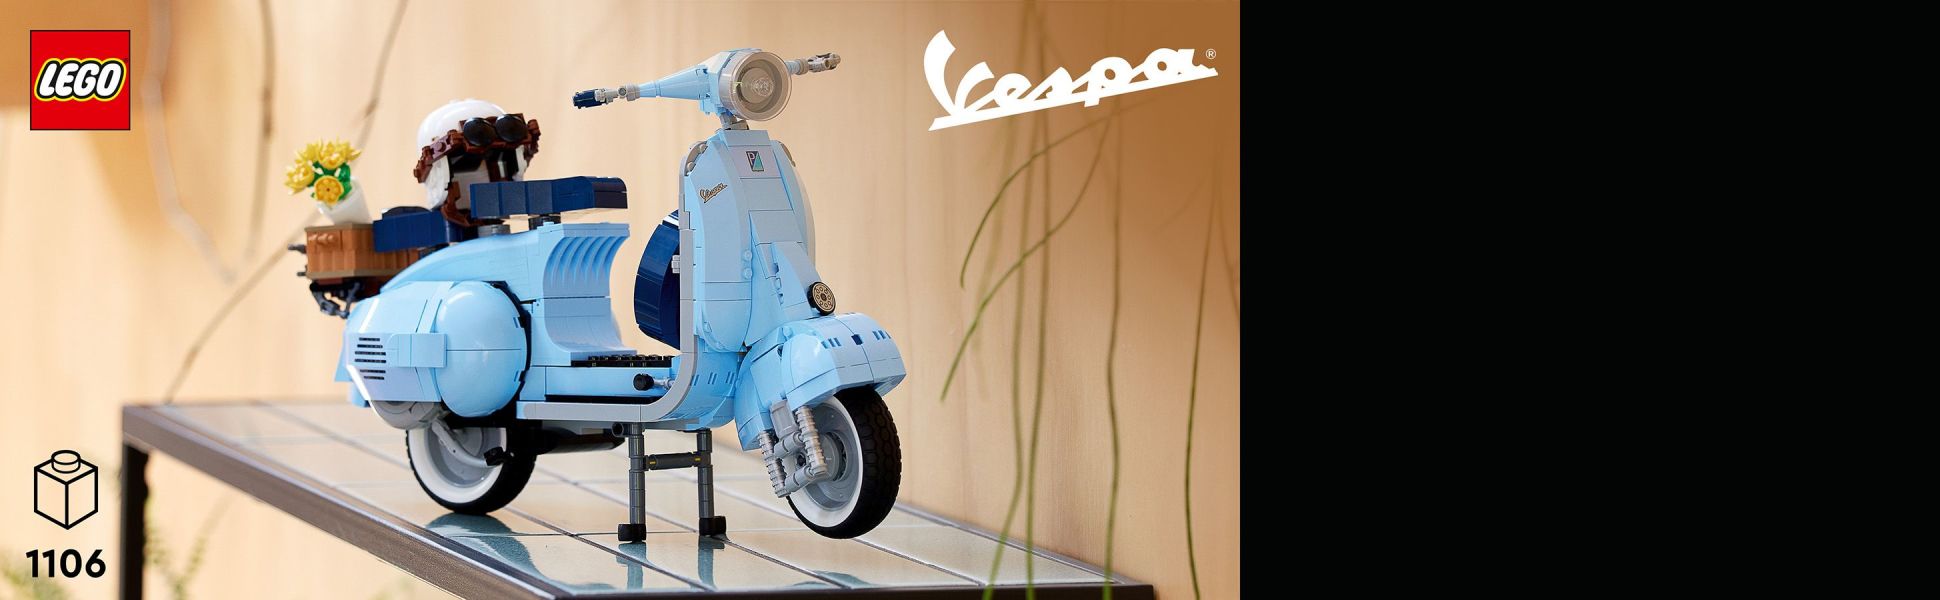 Price released for new LEGO® Vespa kit